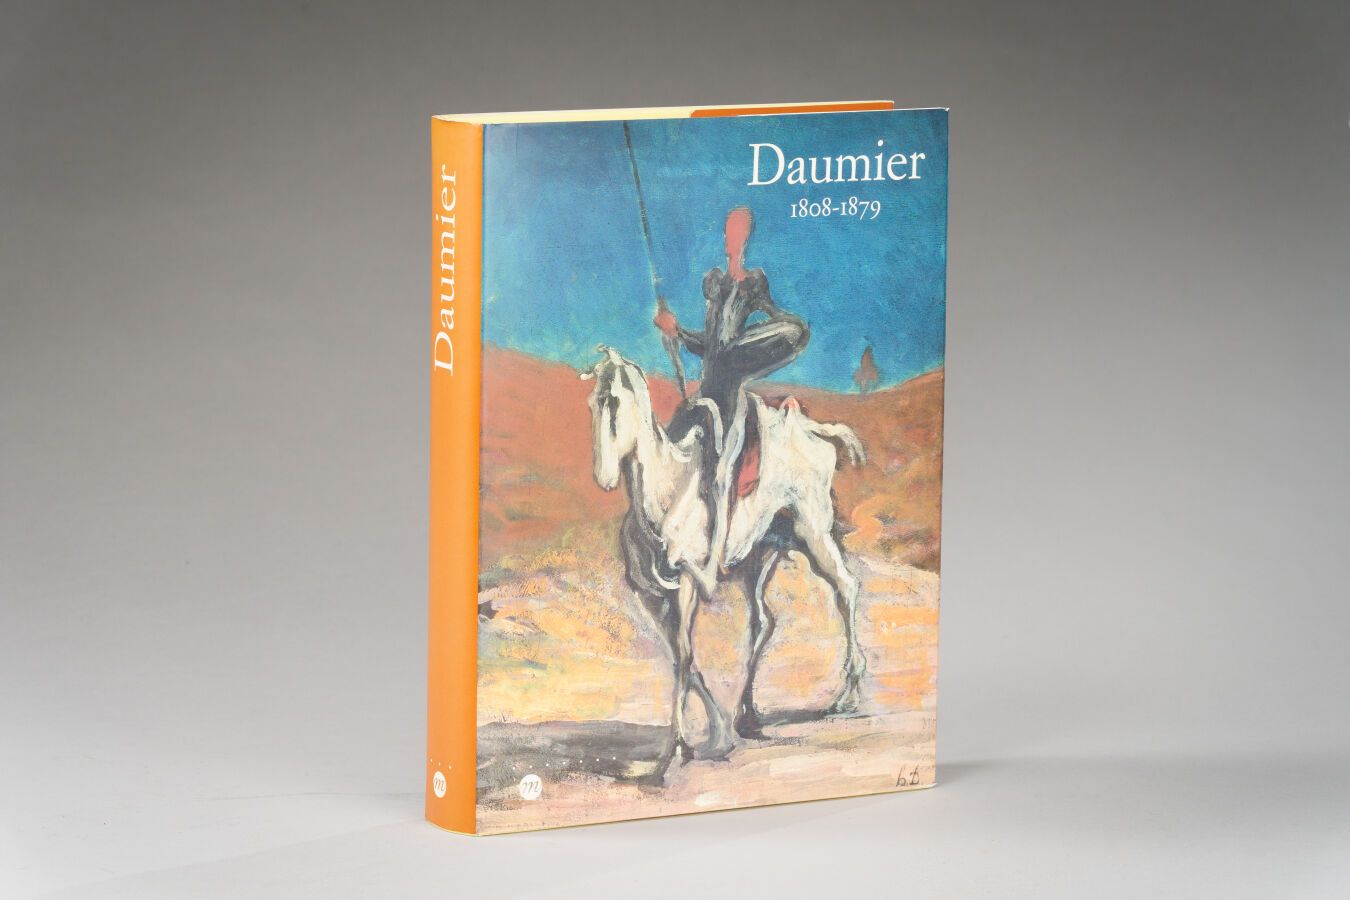 Null 5. DAUMIER, 1808-1879, Réunion des Musées

Nationaux, Paris 1999, 1 vol.